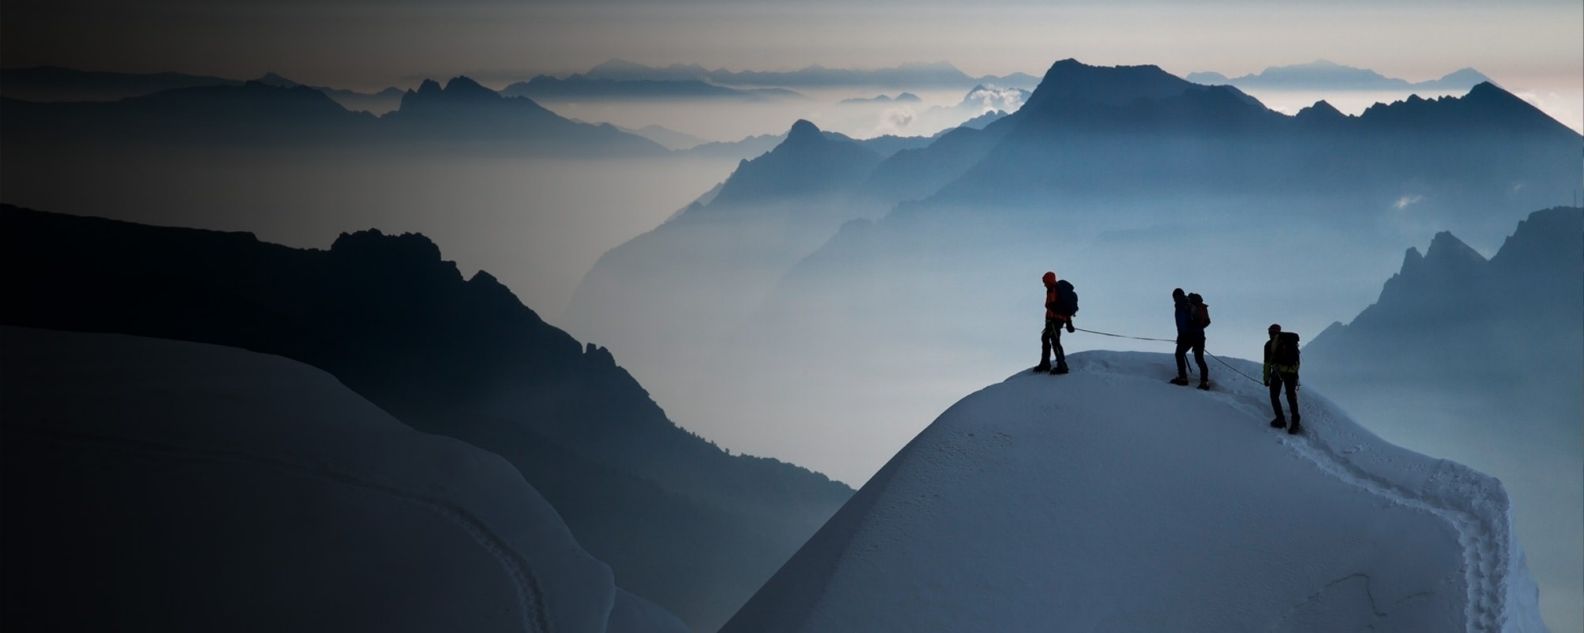 雪に覆われた山頂に立つ3人の登山家 